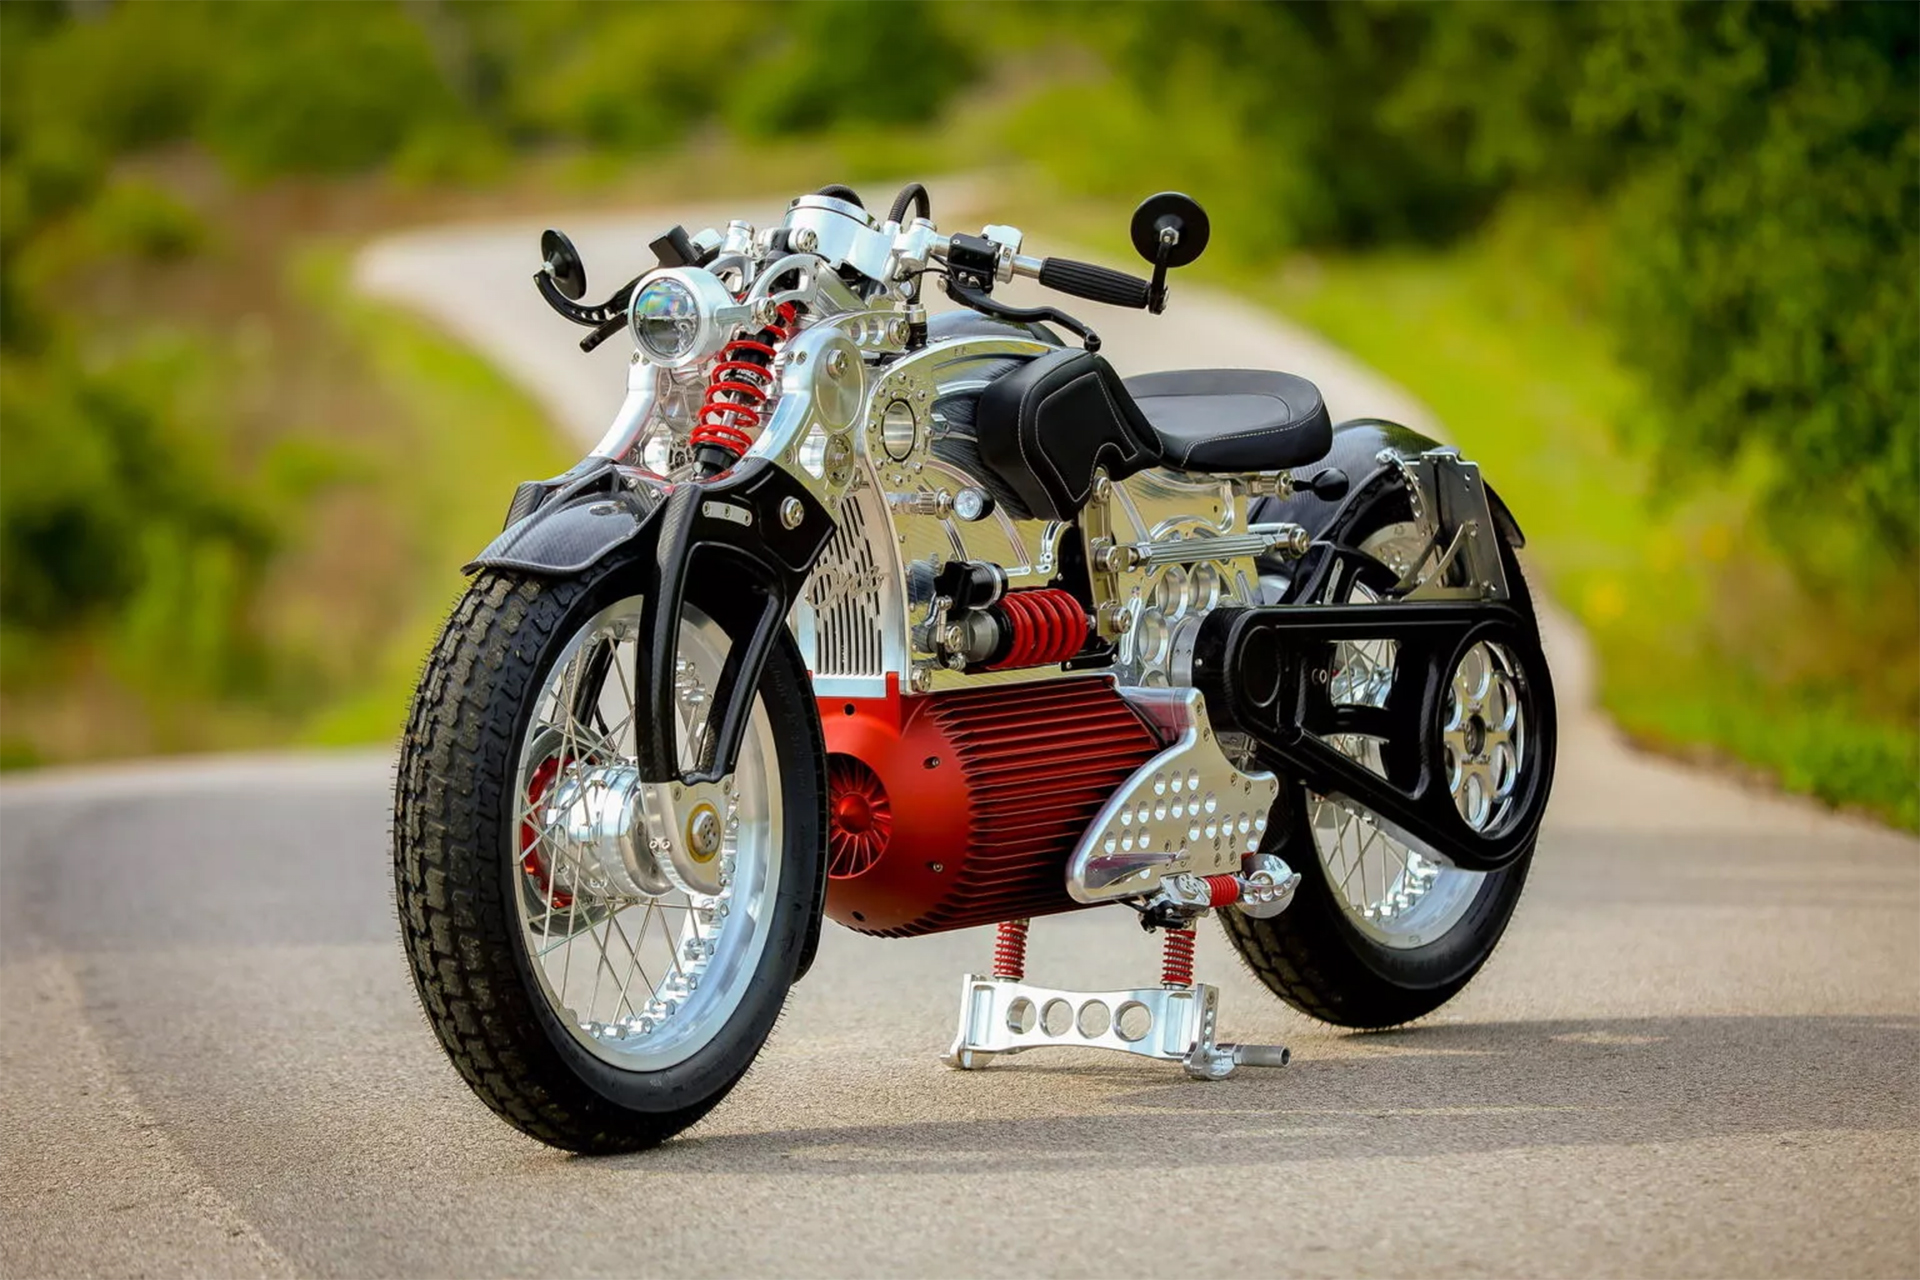 A Moto Elétrica mais rápida do mundo, Curtiss lança motocicleta de luxo com 193 km de autonomia